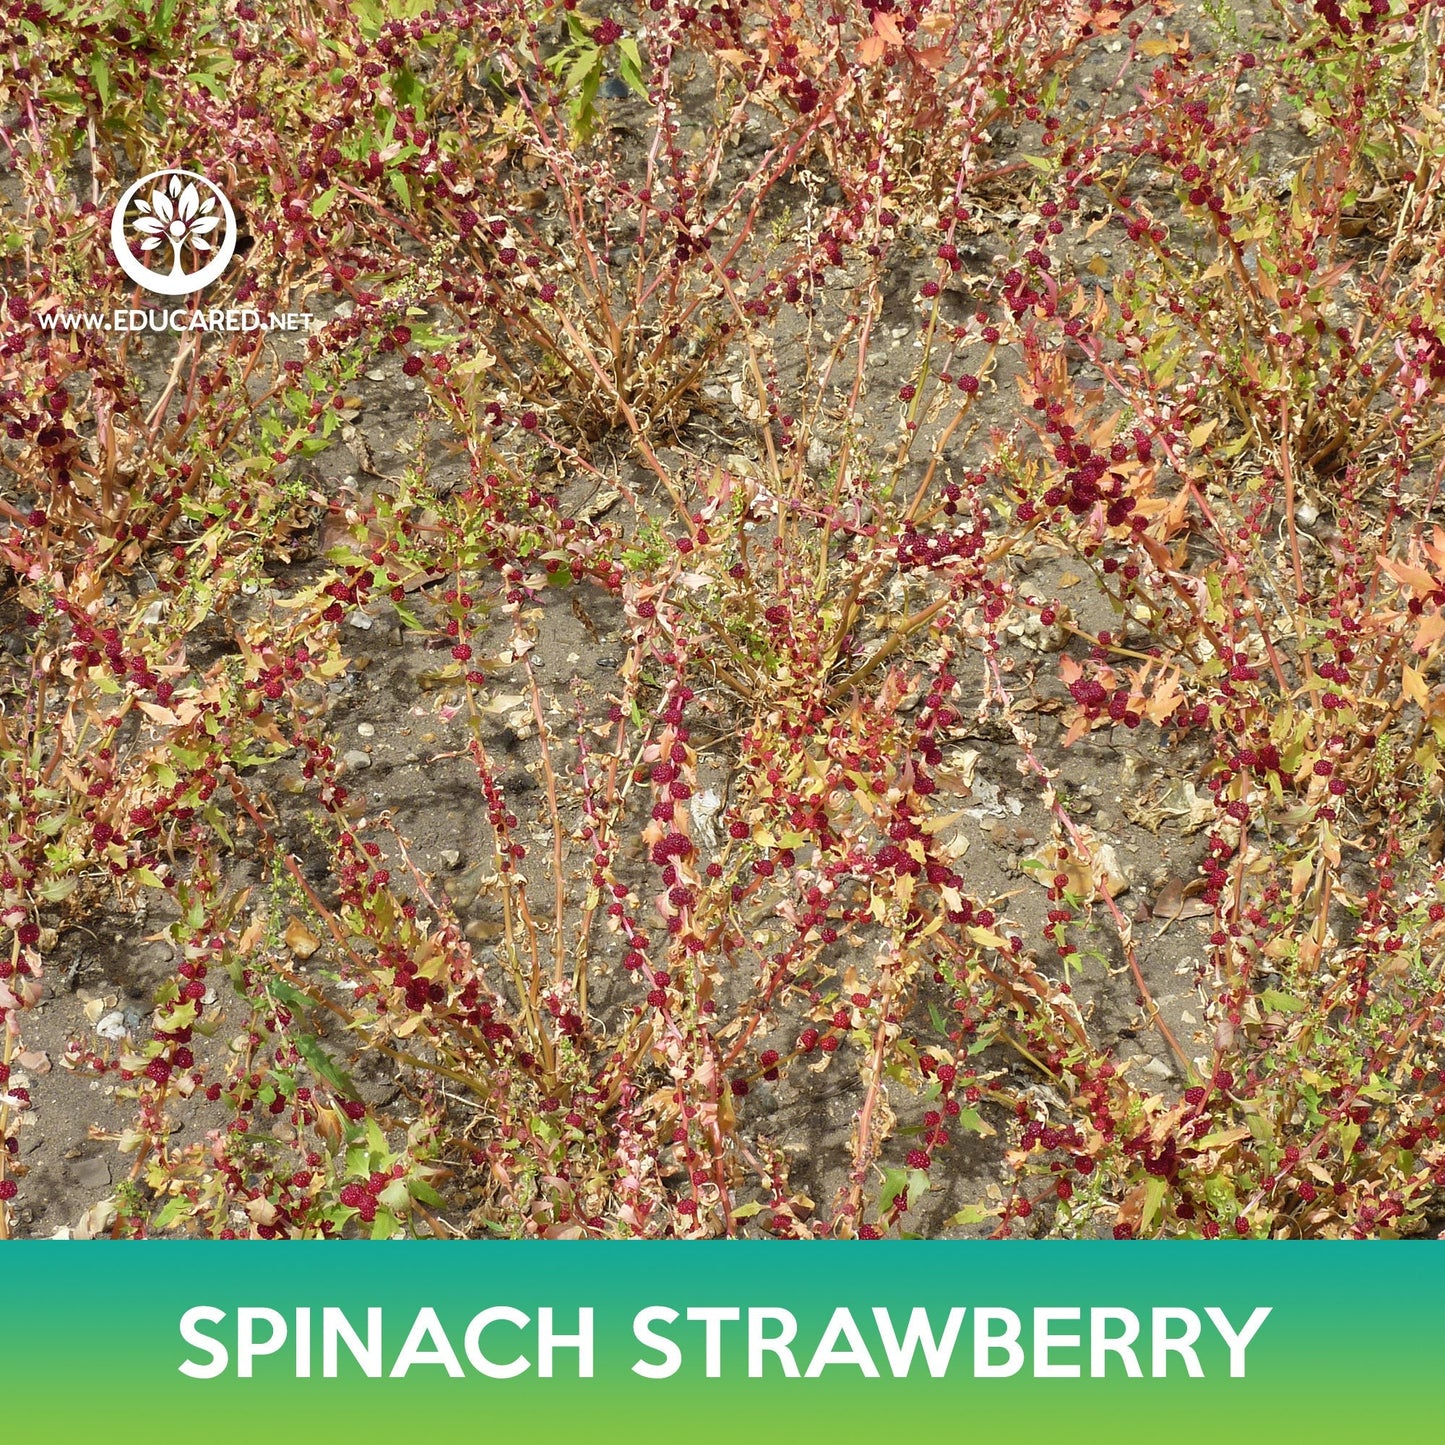 Spinach Strawberry Seeds, Chenopodium capitatum